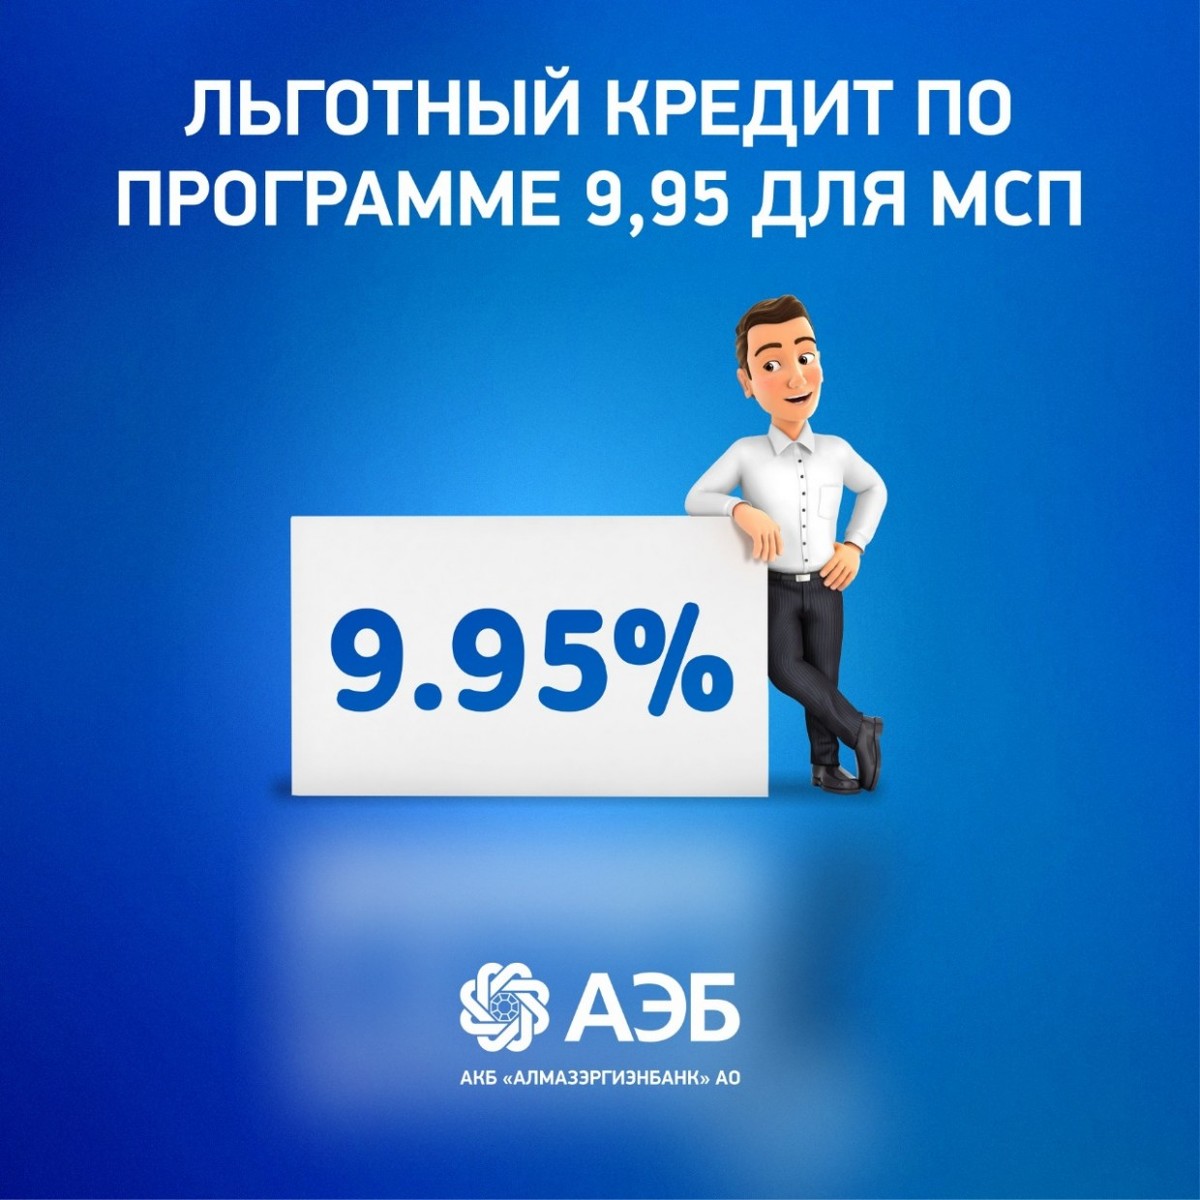 Льготный кредит по программе 9,95 для МСП в Алмазэргиэнбанке